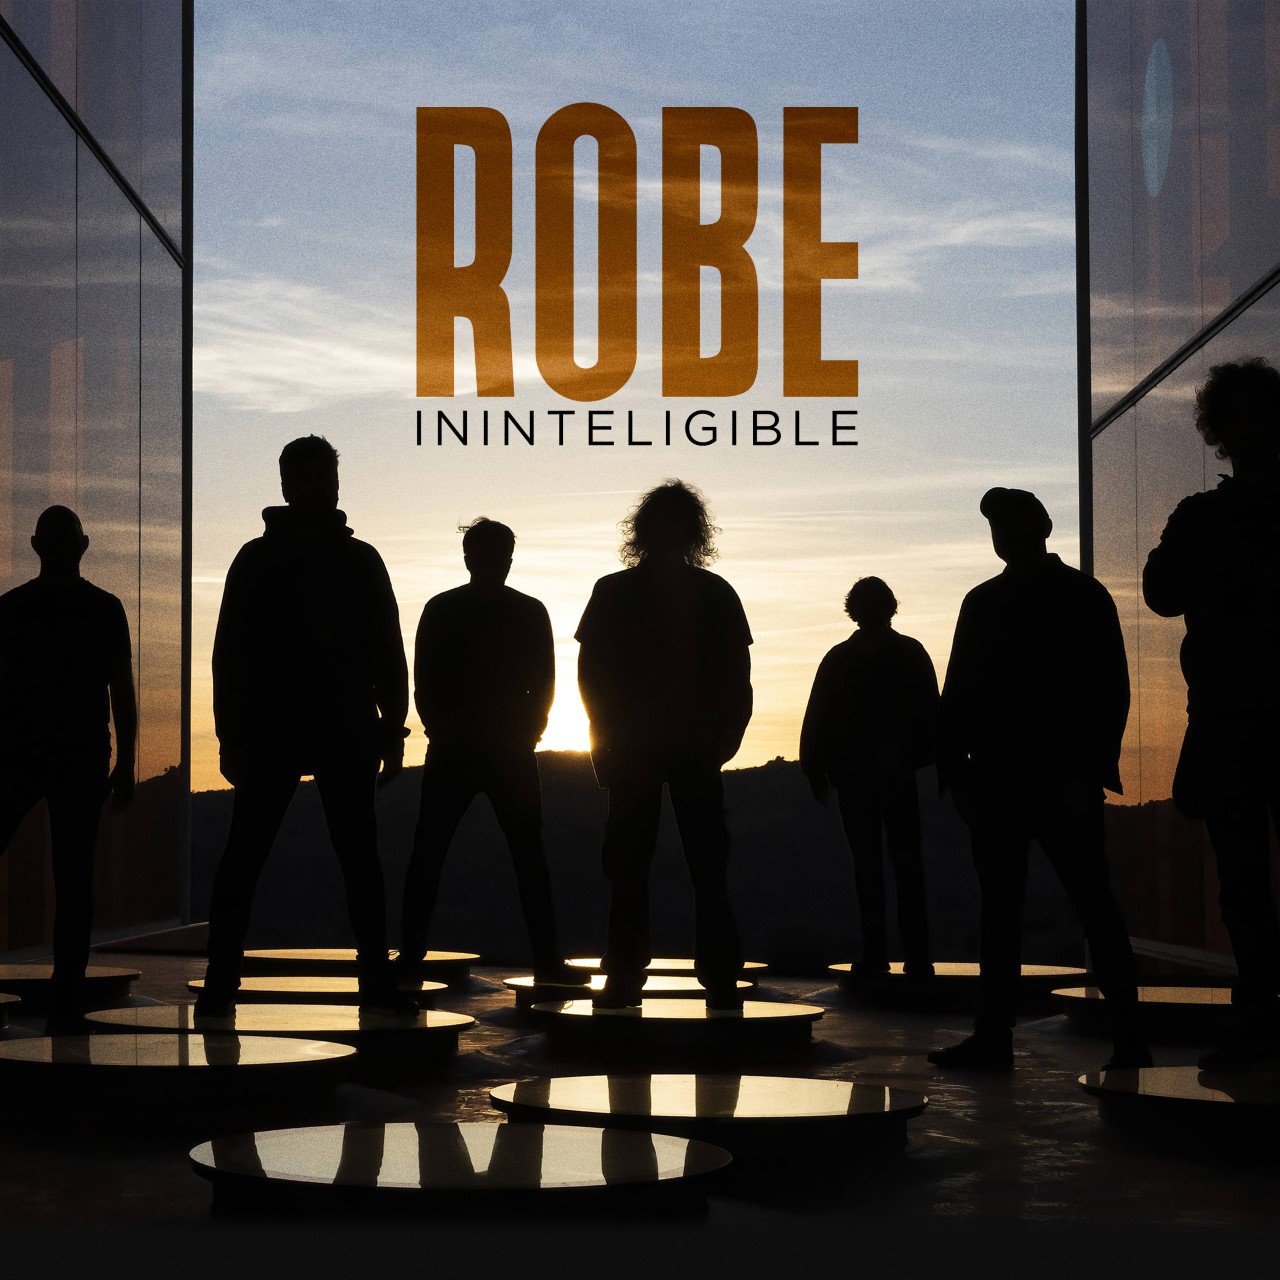 Ya puedes escuchar “Ininteligible”, el nuevo single de Robe que ha estrenado en RocKFM Motel